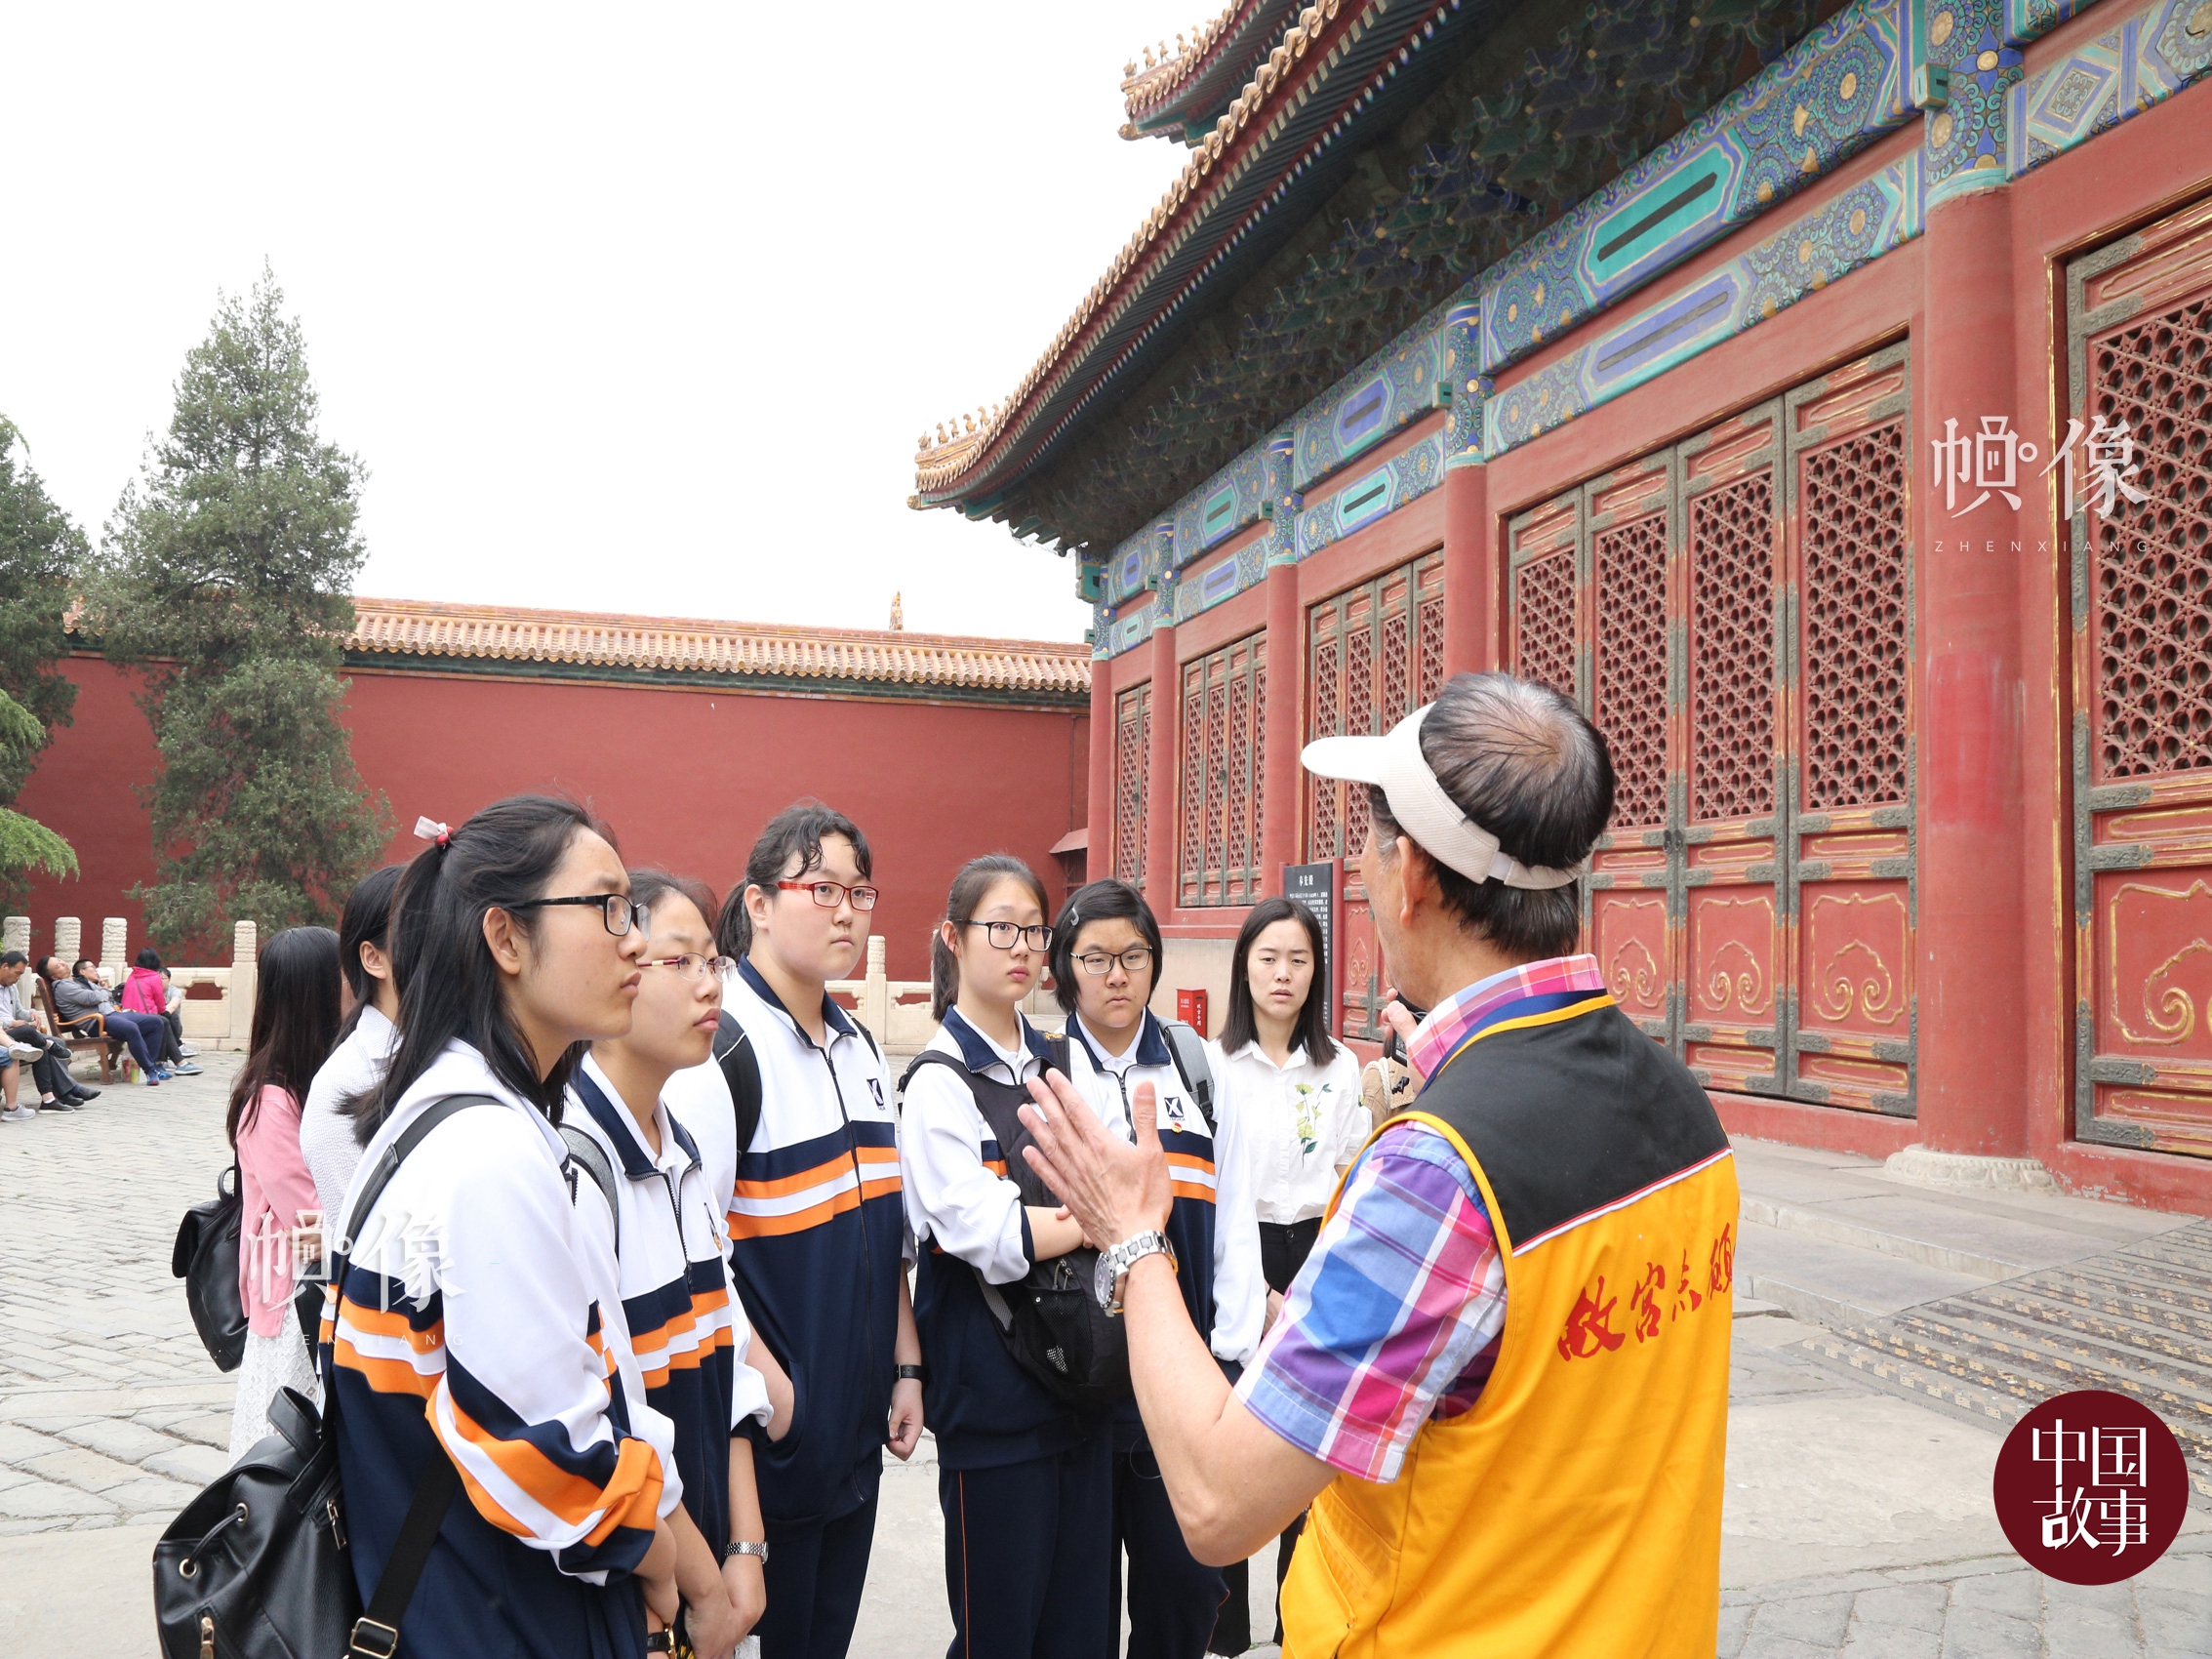 故宫志愿讲解员高斌侠为前来参观的学生进行讲解。 中国网实习记者 赵丹 摄